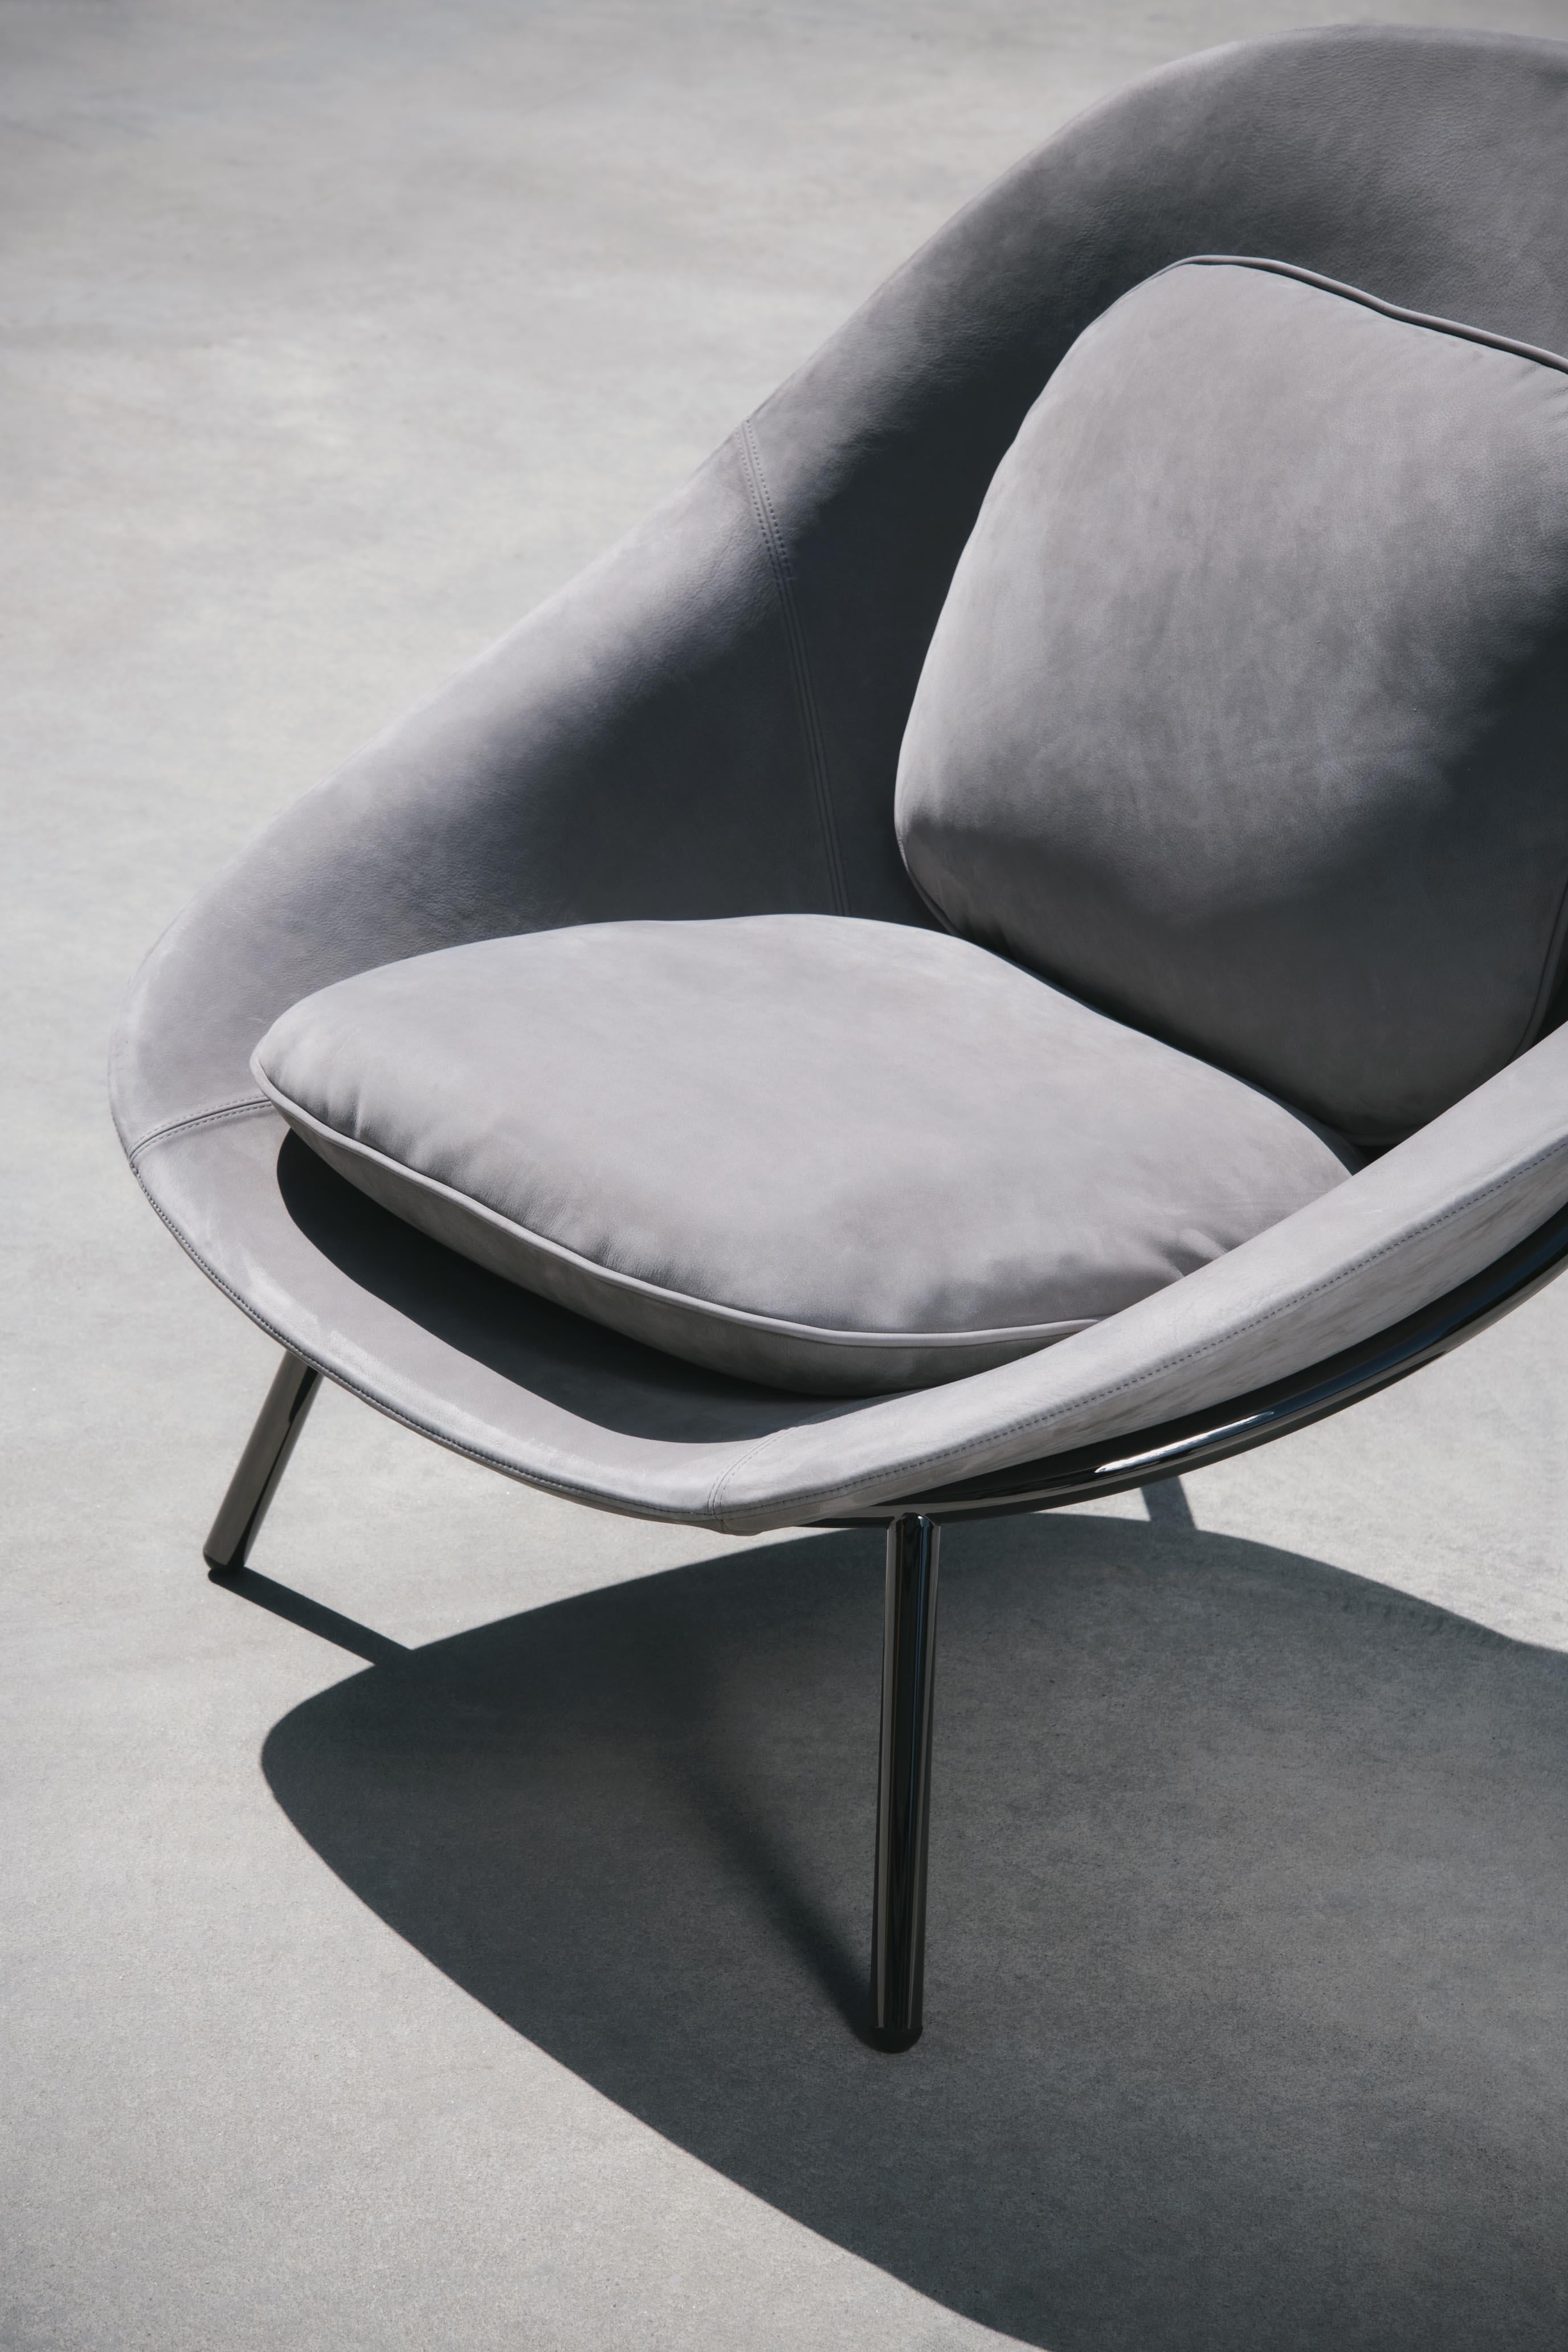 Fabric Amphora Lounge Chair by Noé Duchaufour Lawrance